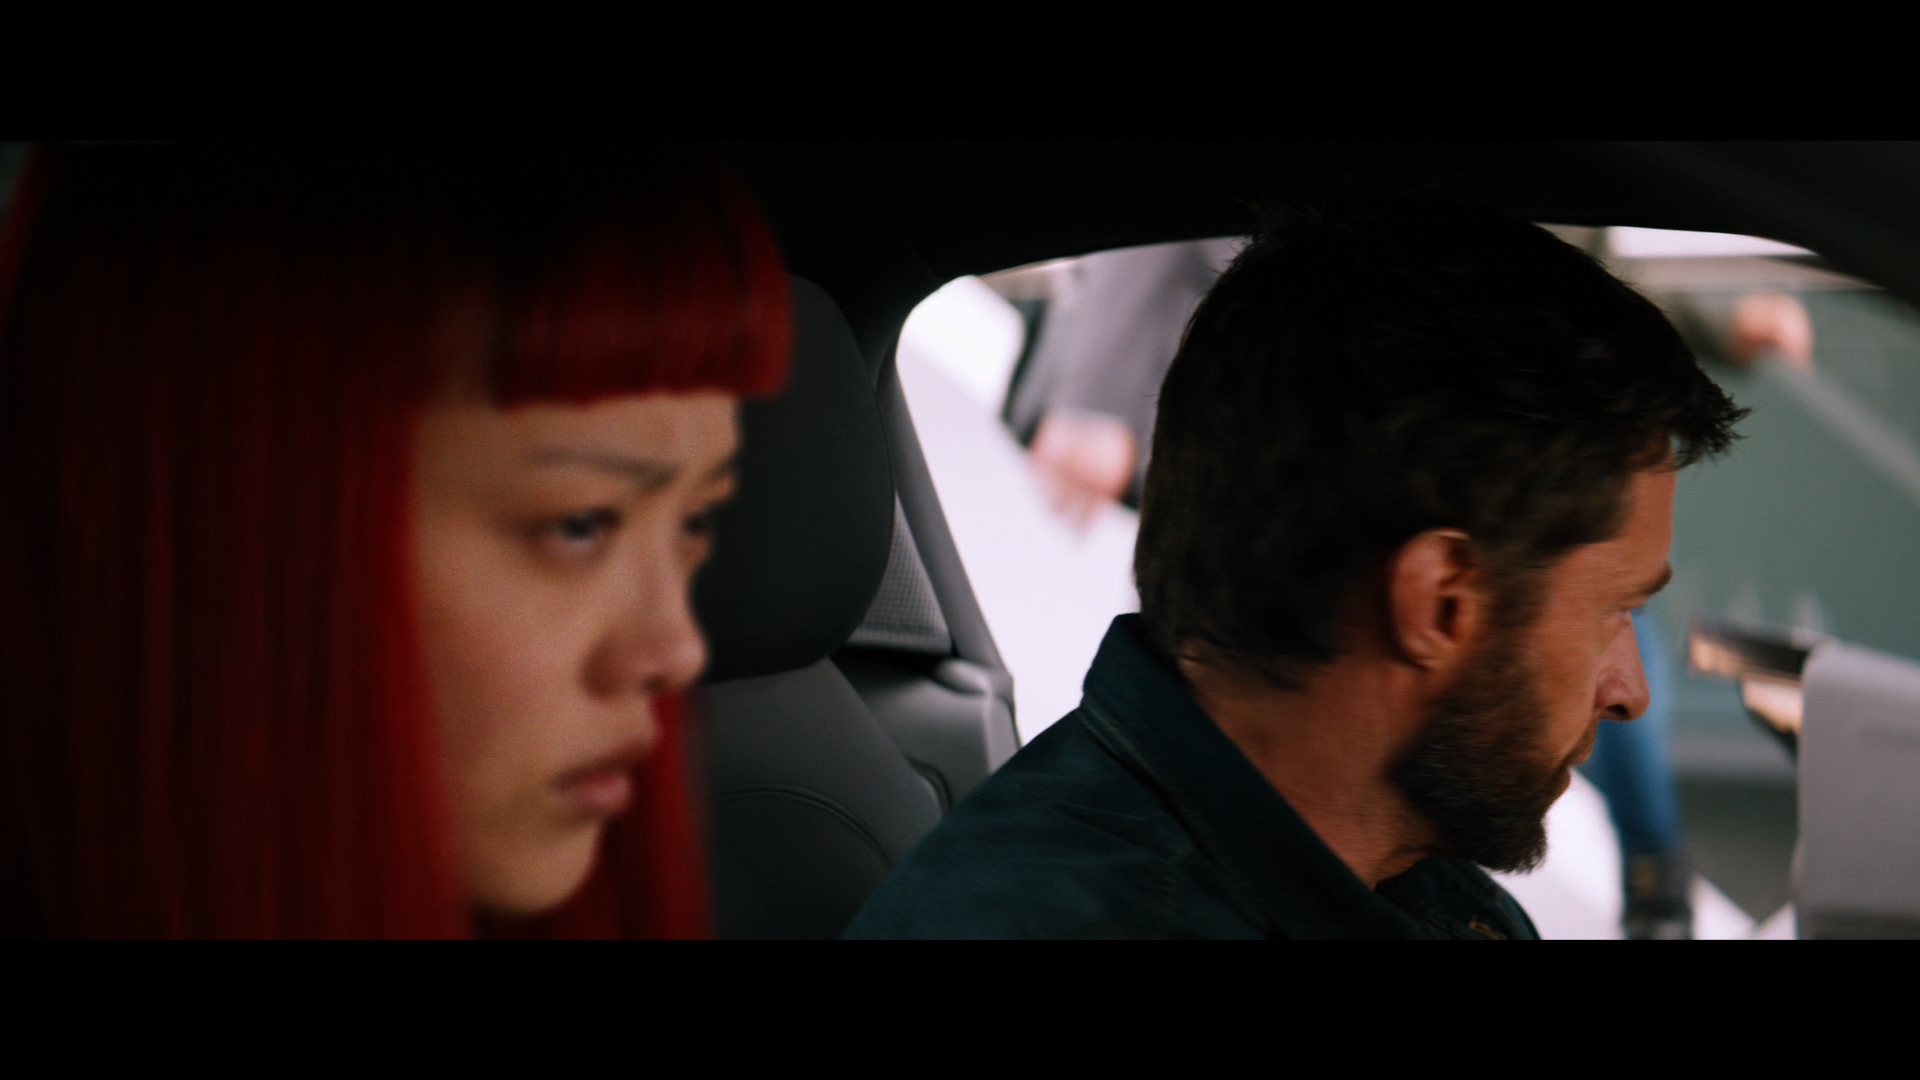 [金刚狼2].The.Wolverine.2013.3D.TW.BluRay.1080p.AVC.DTS-HD.MA.7.1-OMEGA    46.33G3 n, c6 W& S1 Y-9.jpg